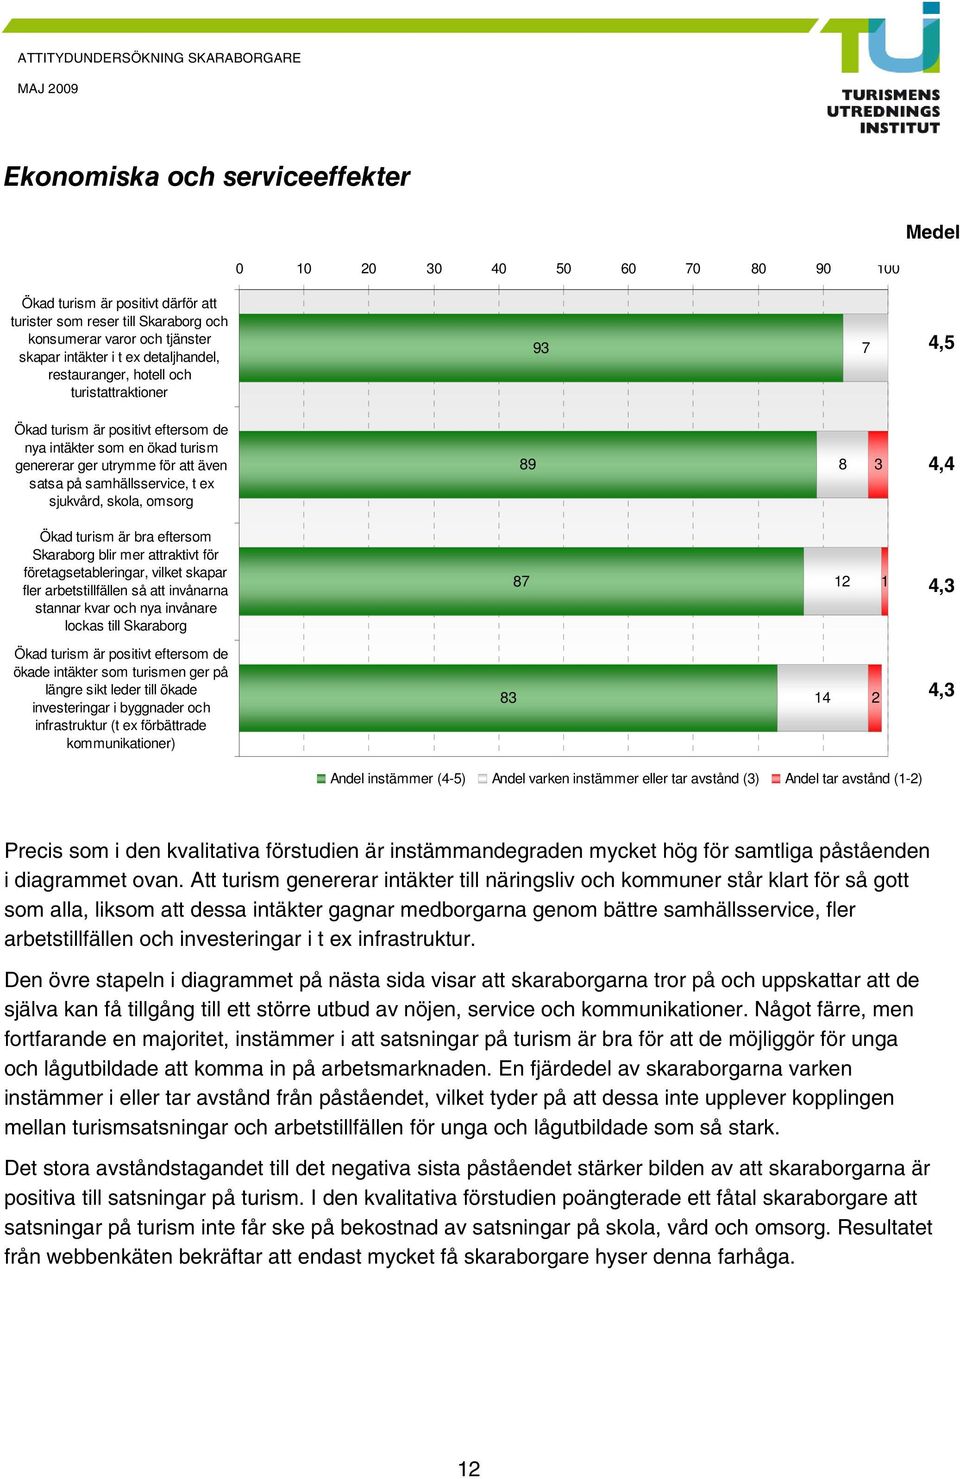 sjukvård, skola, omsorg 89 8 3, Ökad turism är bra eftersom Skaraborg blir mer attraktivt för företagsetableringar, vilket skapar fler arbetstillfällen så att invånarna stannar kvar och nya invånare